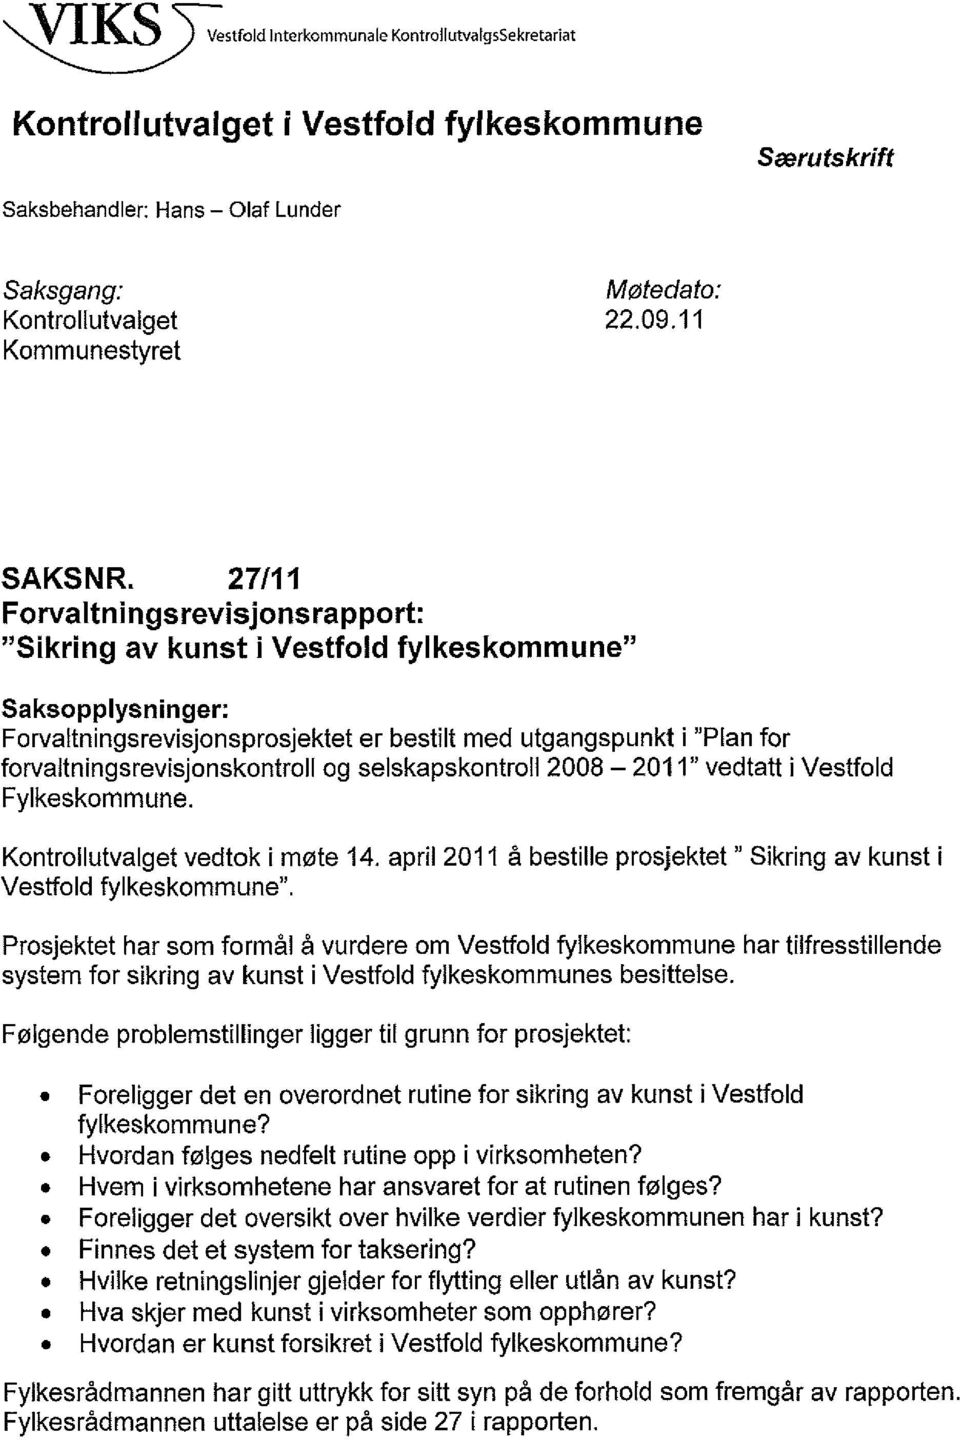 27/11 Forvaltningsrevisjonsrapport: "Sikring av kunst i Vestfold fylkeskommune" Saksopplysninger: Forvaltningsrevisjonsprosjektet er bestilt med utgangspunkt i "Plan for forvaltningsrevisjonskontroll